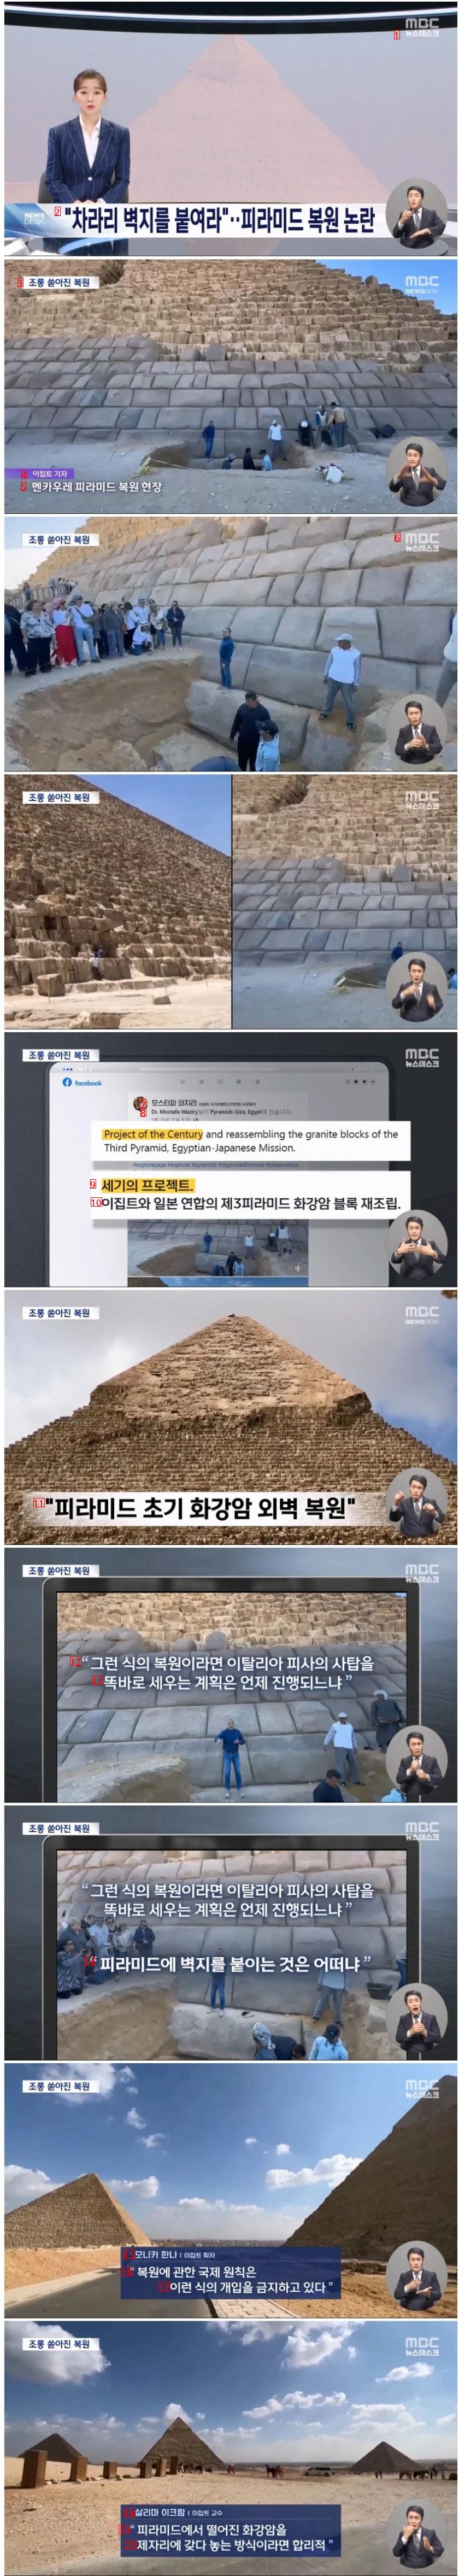 논란중인 피라미드 복원 상황